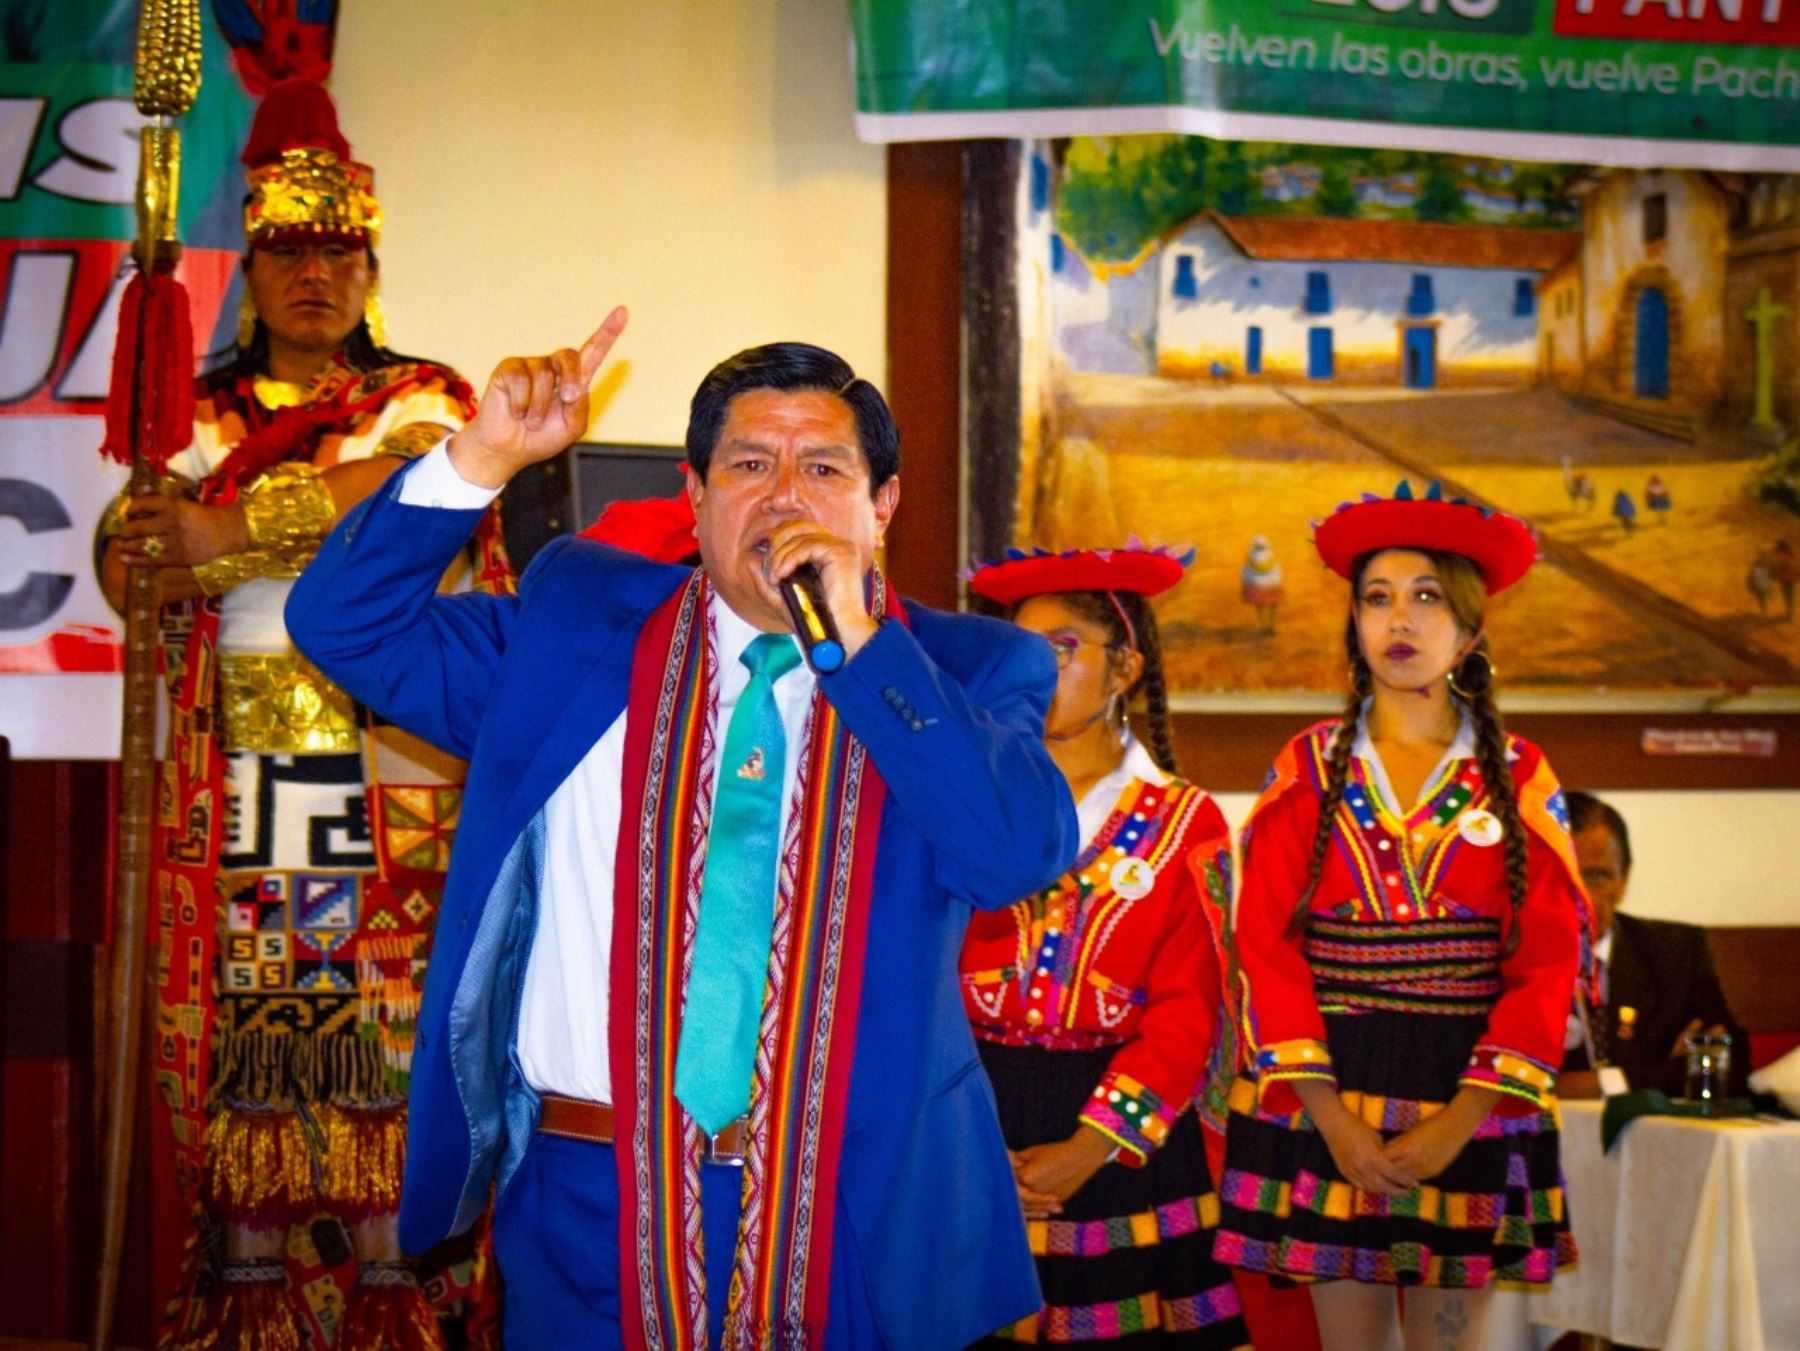 Luis Beltrán es el virtual alcalde provincial de Cusco, de acuerdo al avance de los resultados oficiales de la ONPE.